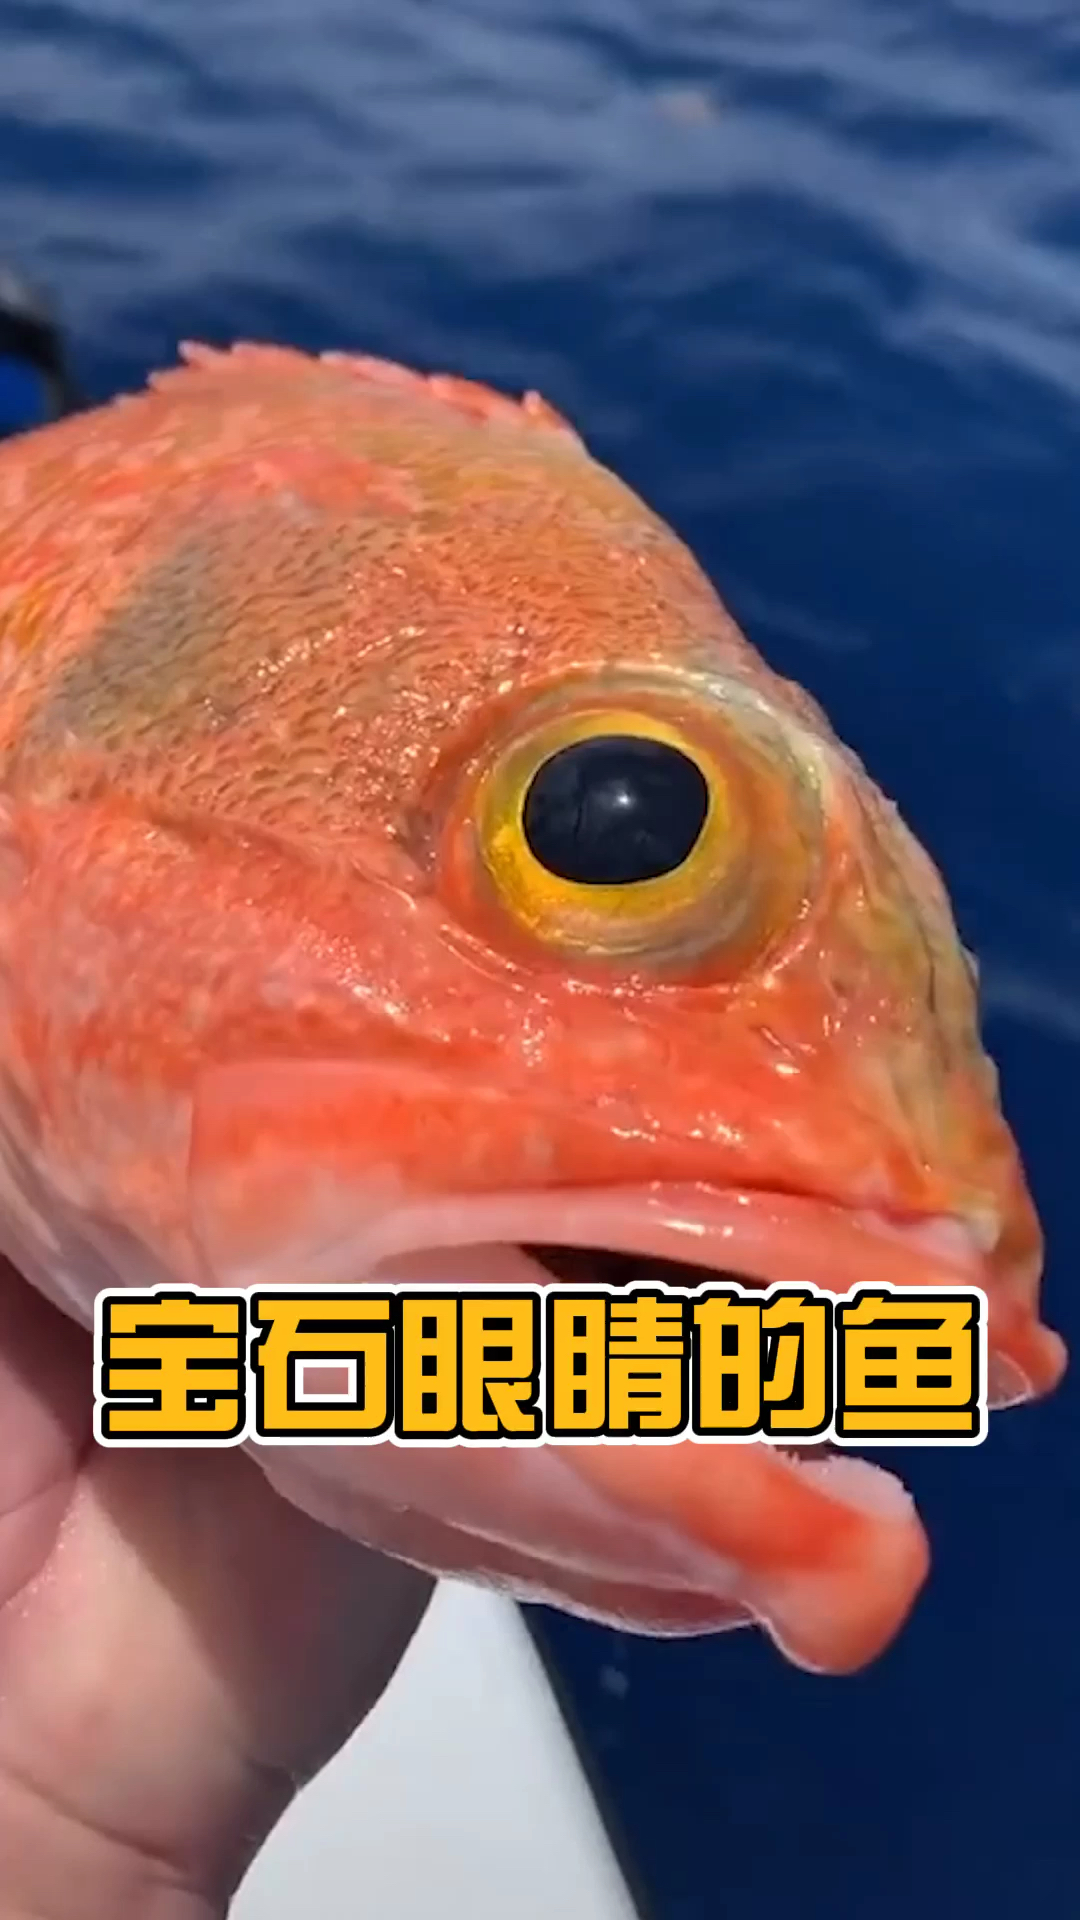 大眼睛双眼皮肤色亮,一条美鱼应该有的美点,它都具备了